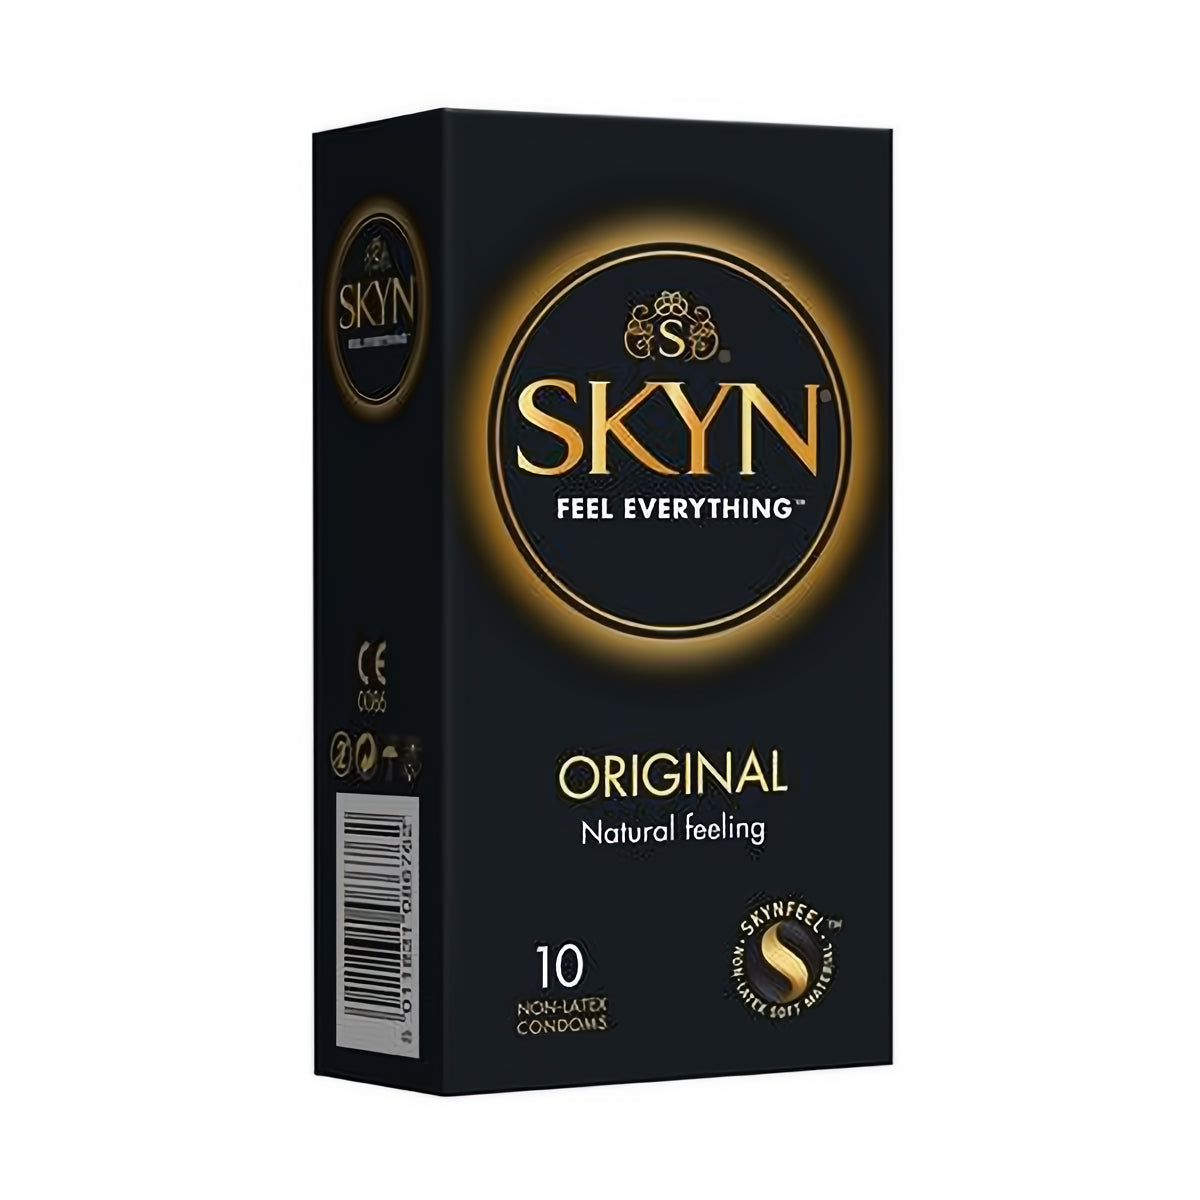 Mate Skyn Original - Condoms - 10 Pieces - EroticToyzProducten,Veilige Seks, Verzorging Hulp,Veilige Seks,Condooms voor Mannen,,MannelijkEXS